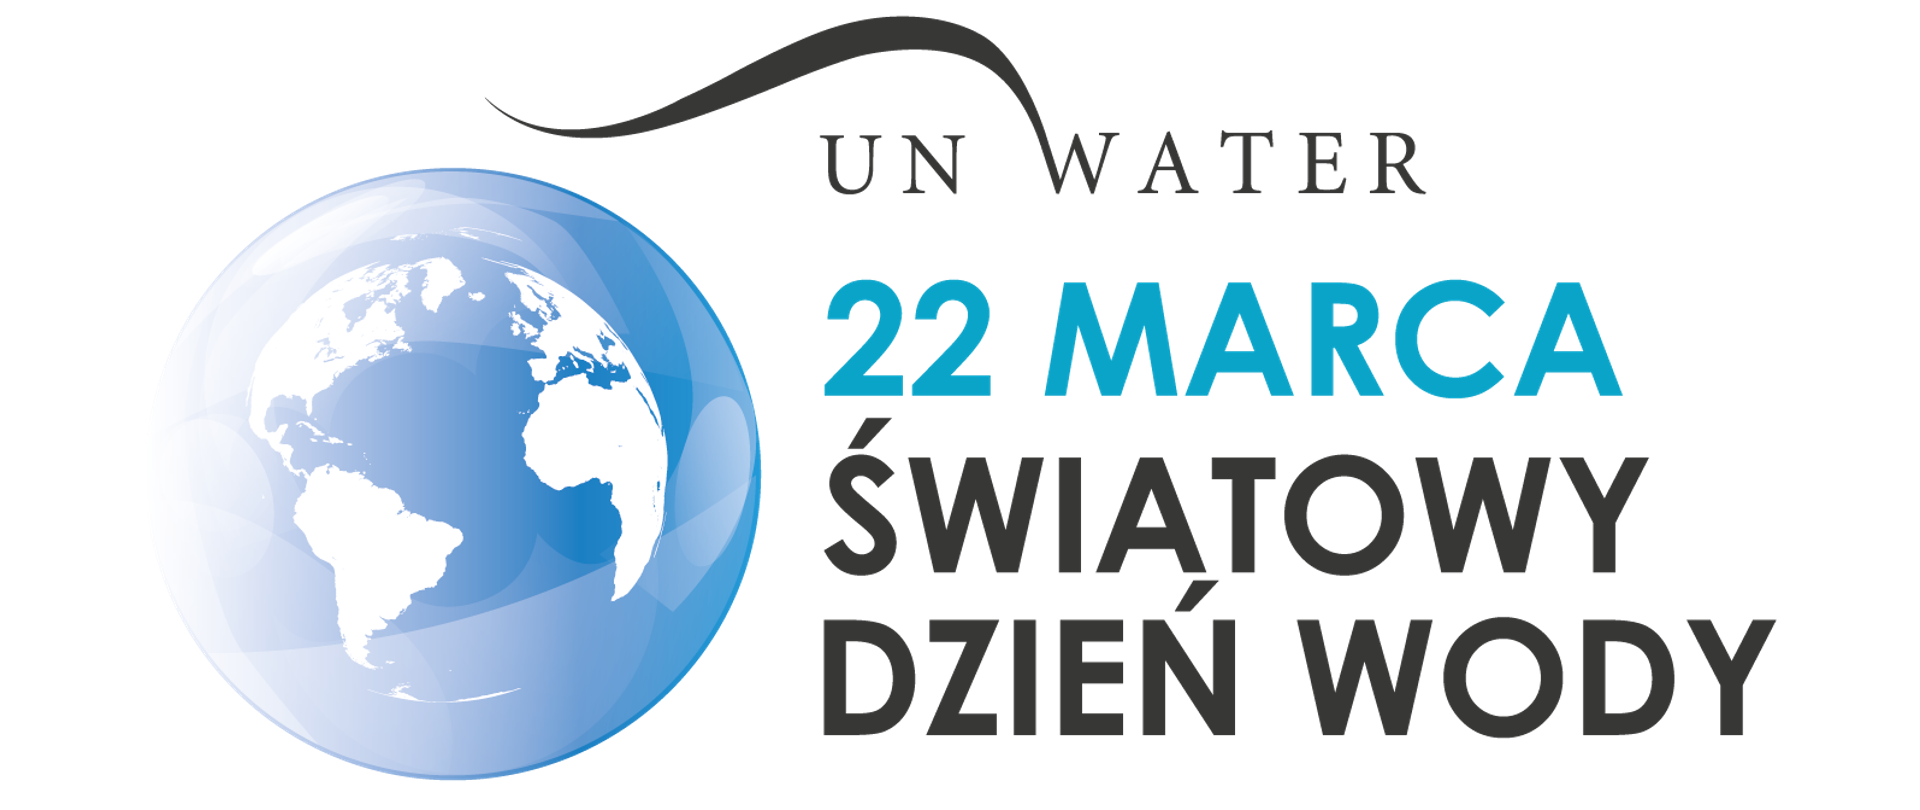 światowy dzień wody